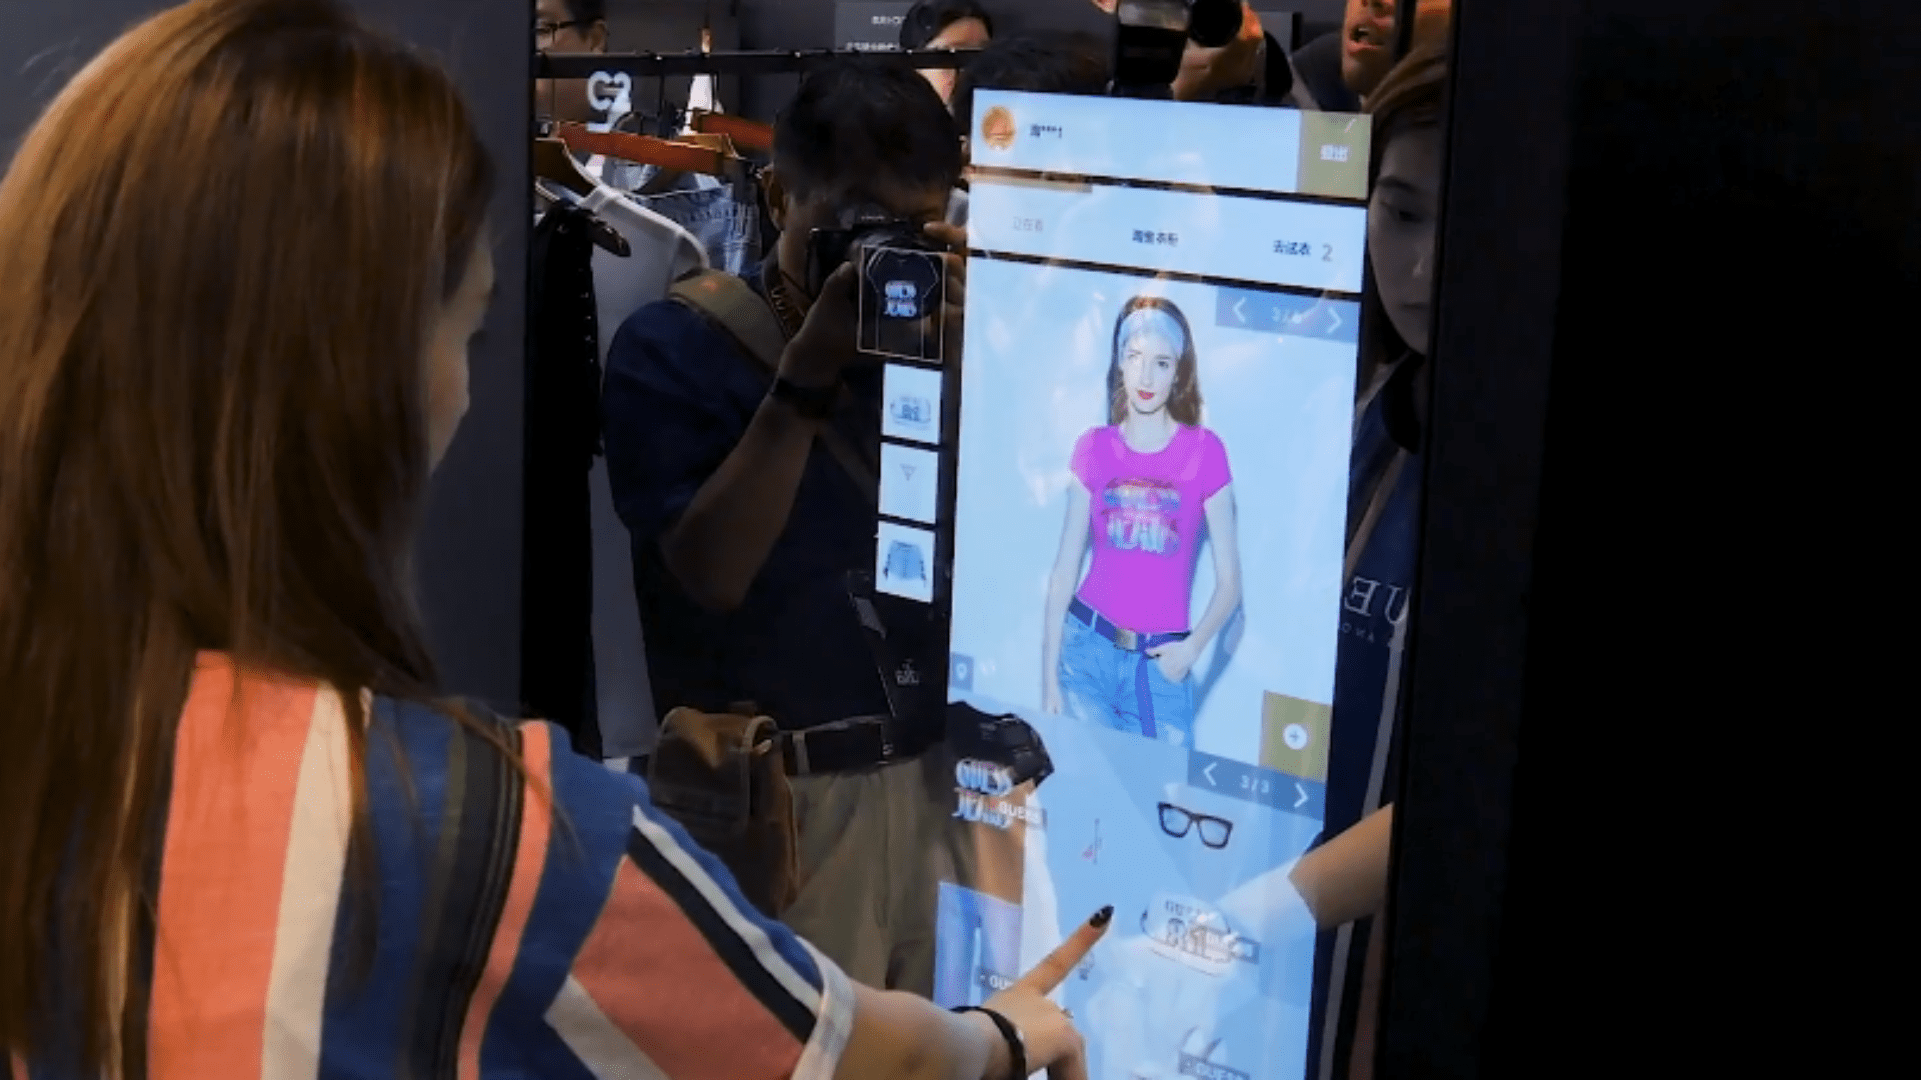 Nesta imagem podemos ver uma mulher escolhendo as roupas por meio de inteligência artificial.